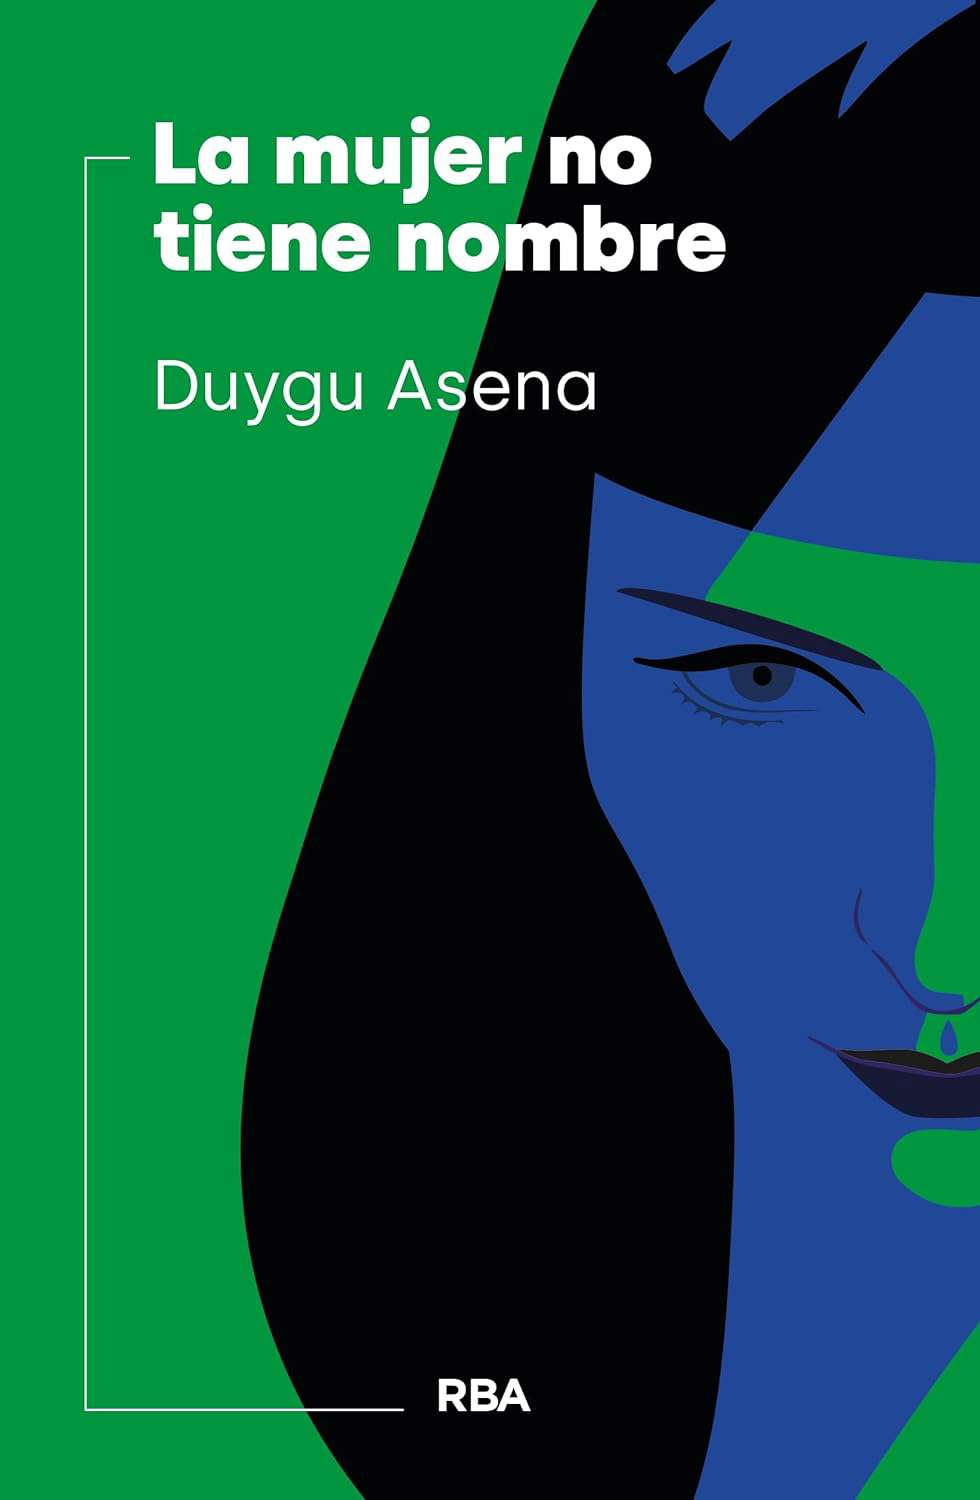 La mujer no tiene nombre de Duygu Asena